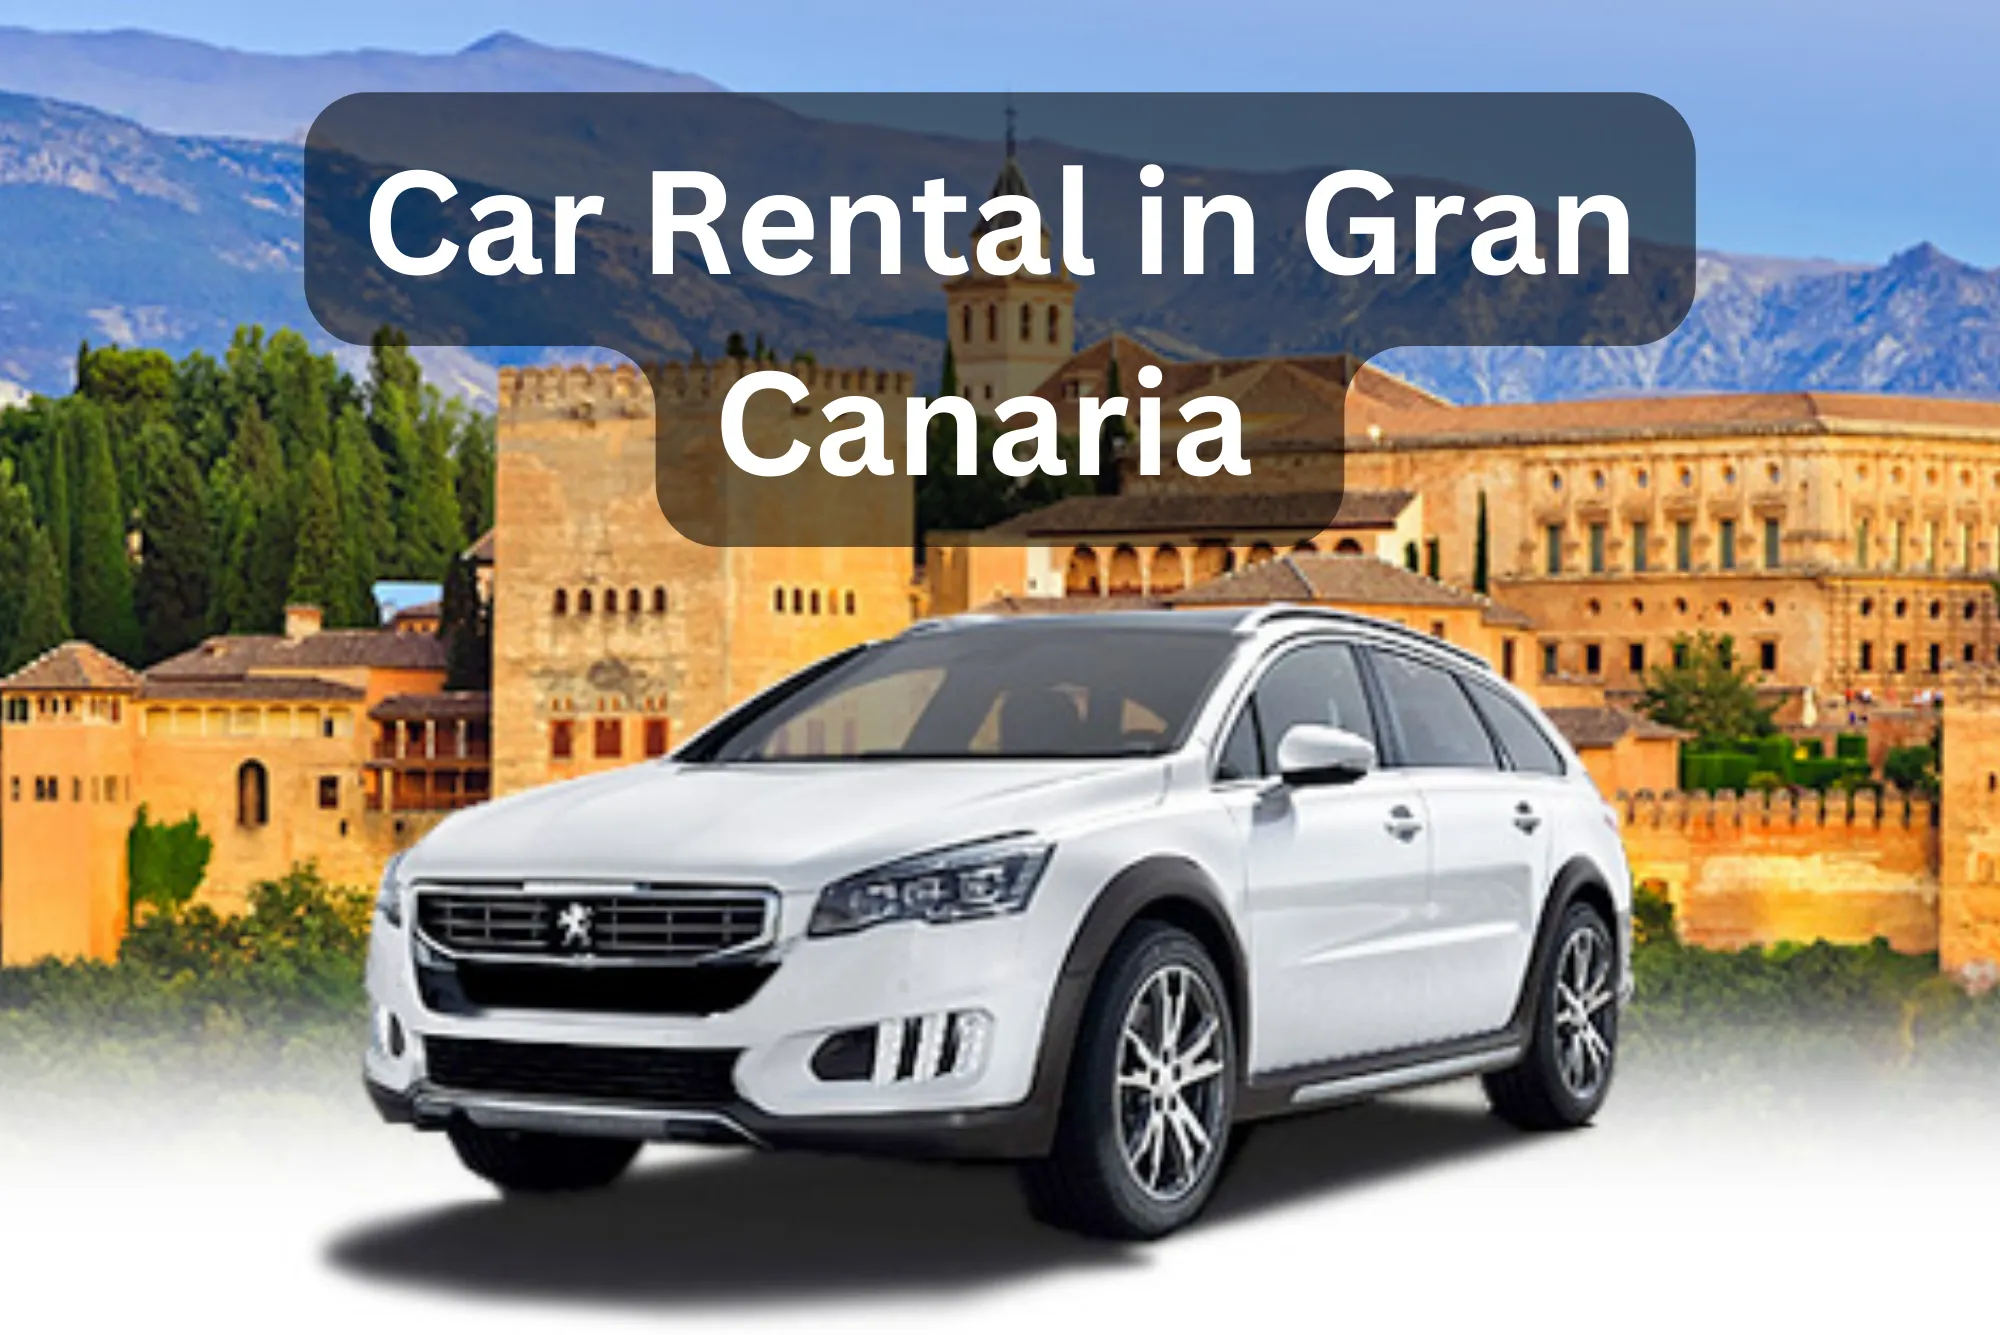 Affordable Car Rental in Gran Canaria, Spain